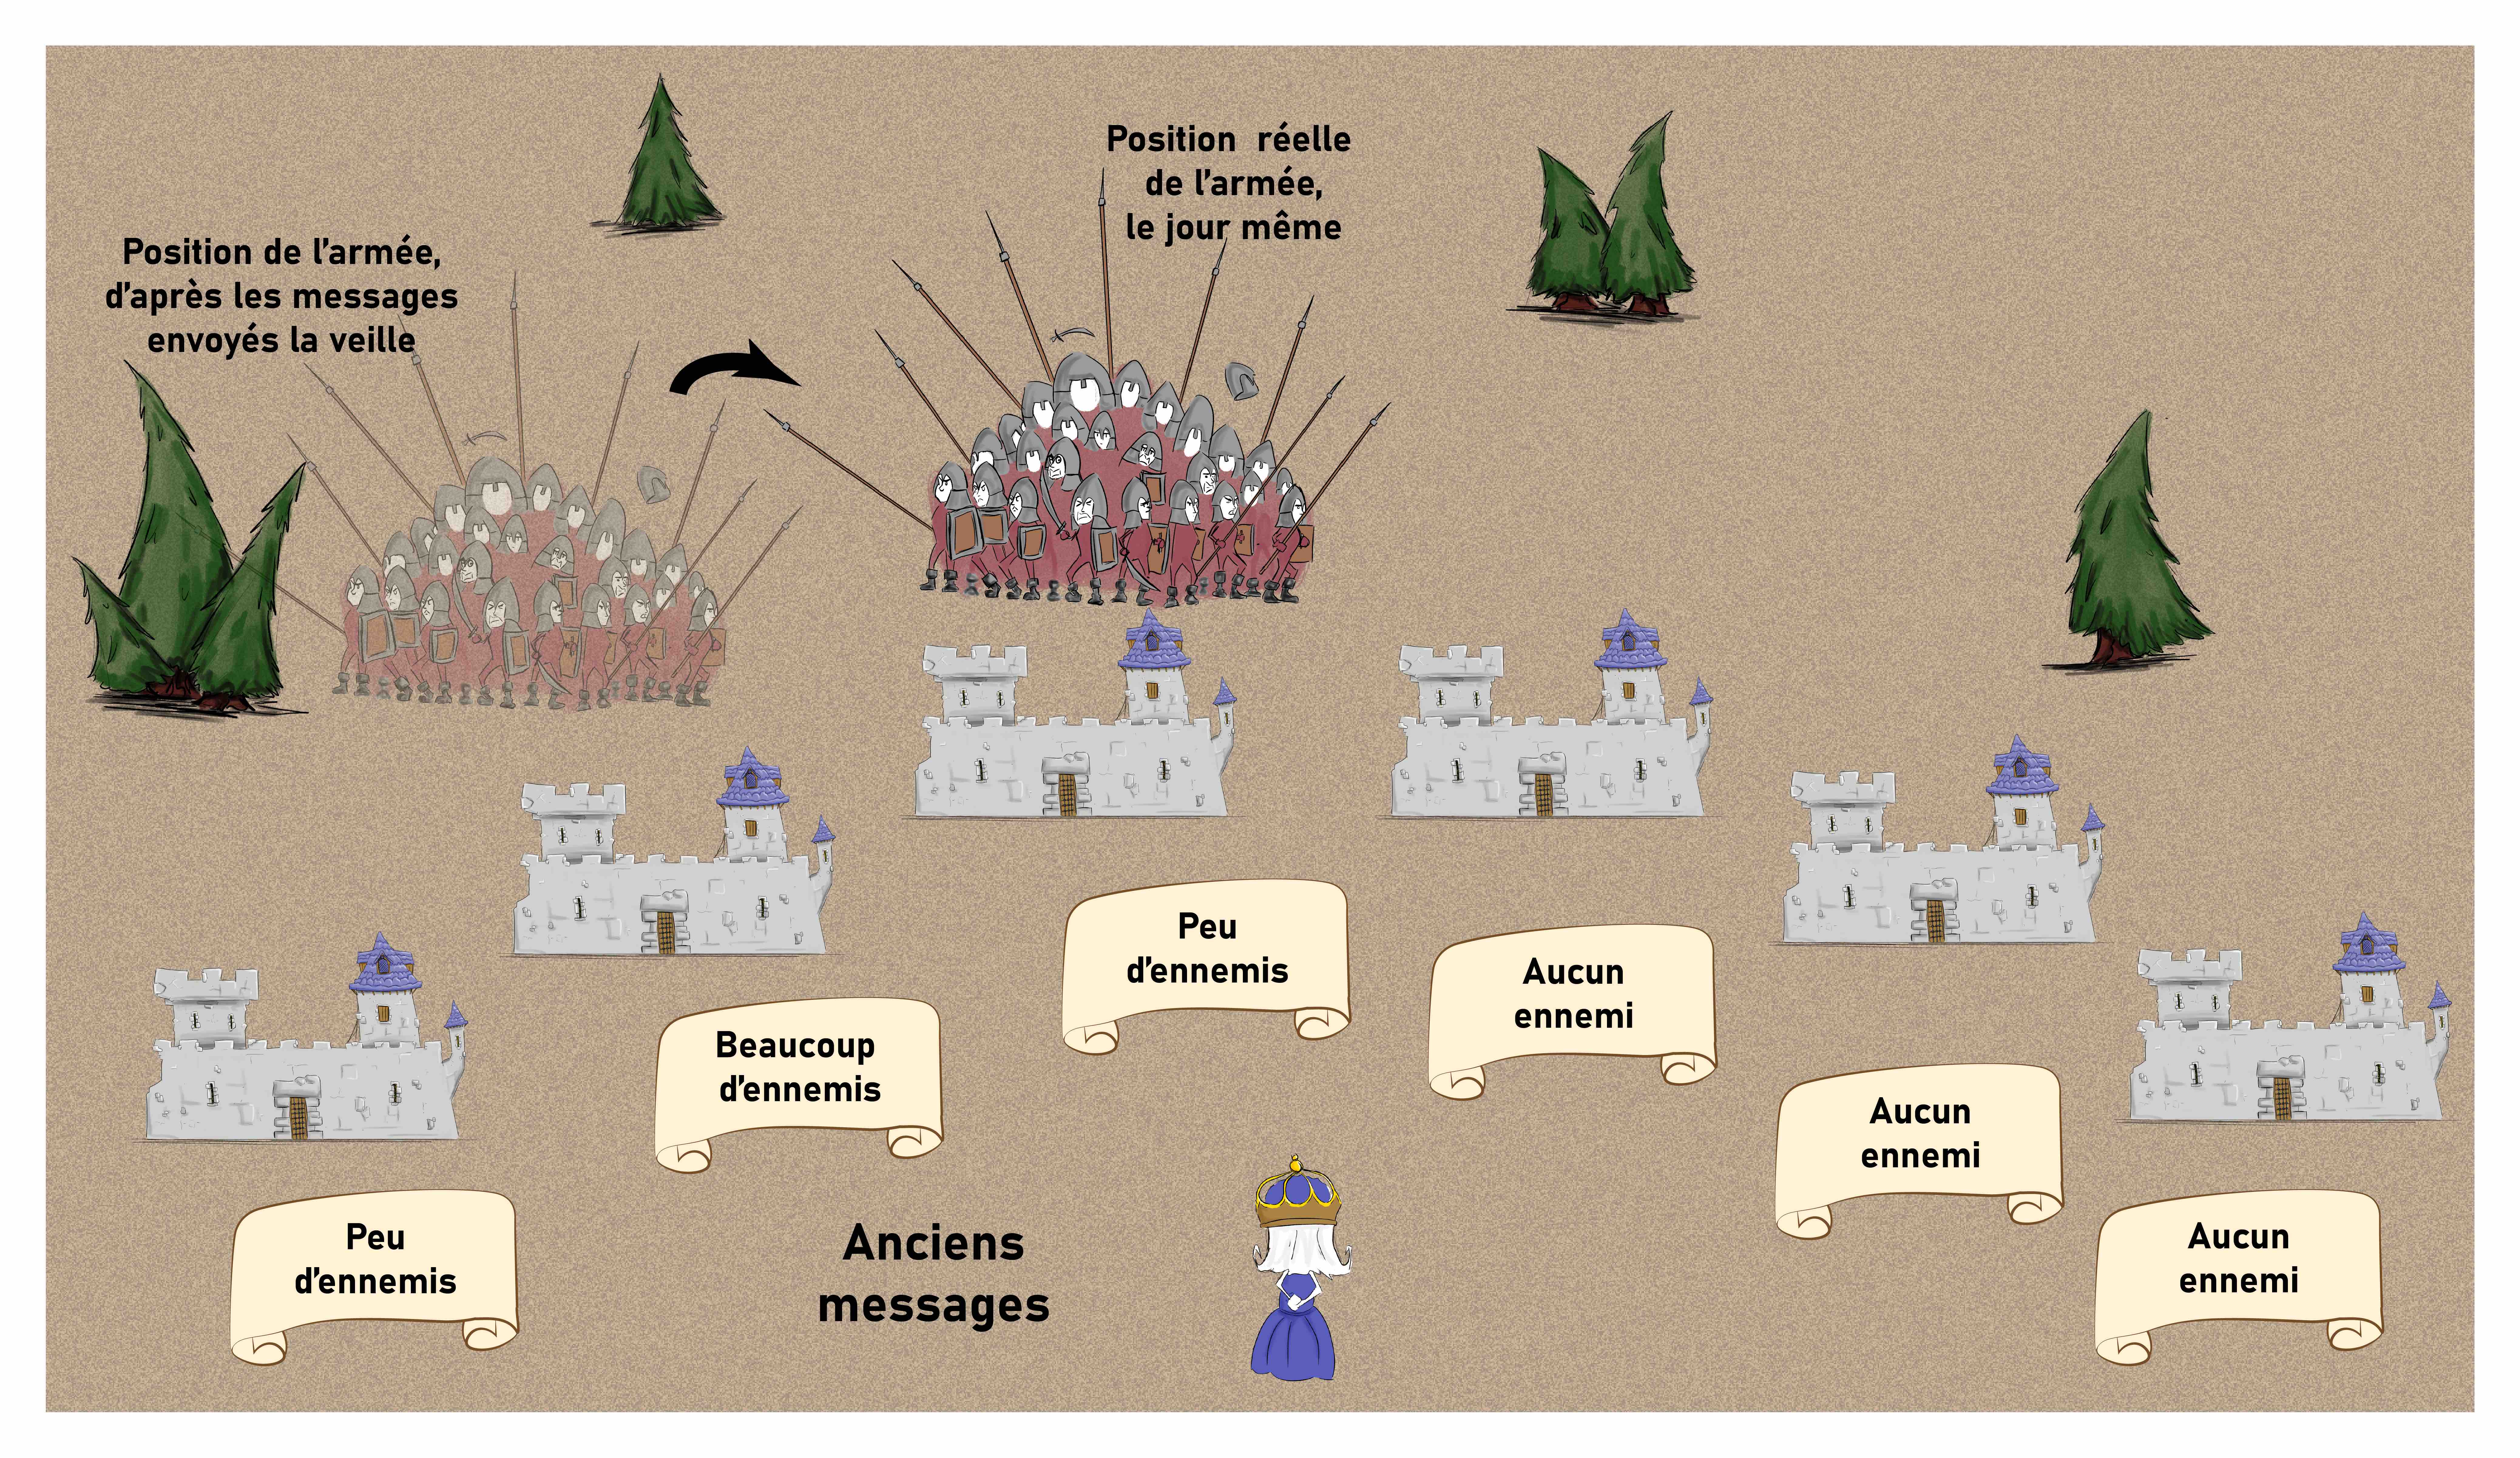 La reine est devant ses 6 châteaux. L'armée est entre les châteaux 3 et 4 le jour même. Une armée transparente montre la position de l'armée la veille, entre les châteaux 1 et 2. Les messages, de gauche à droite, sont "peu d'ennemis", "beaucoup", "peu", "aucun", "aucun" et "aucun". 